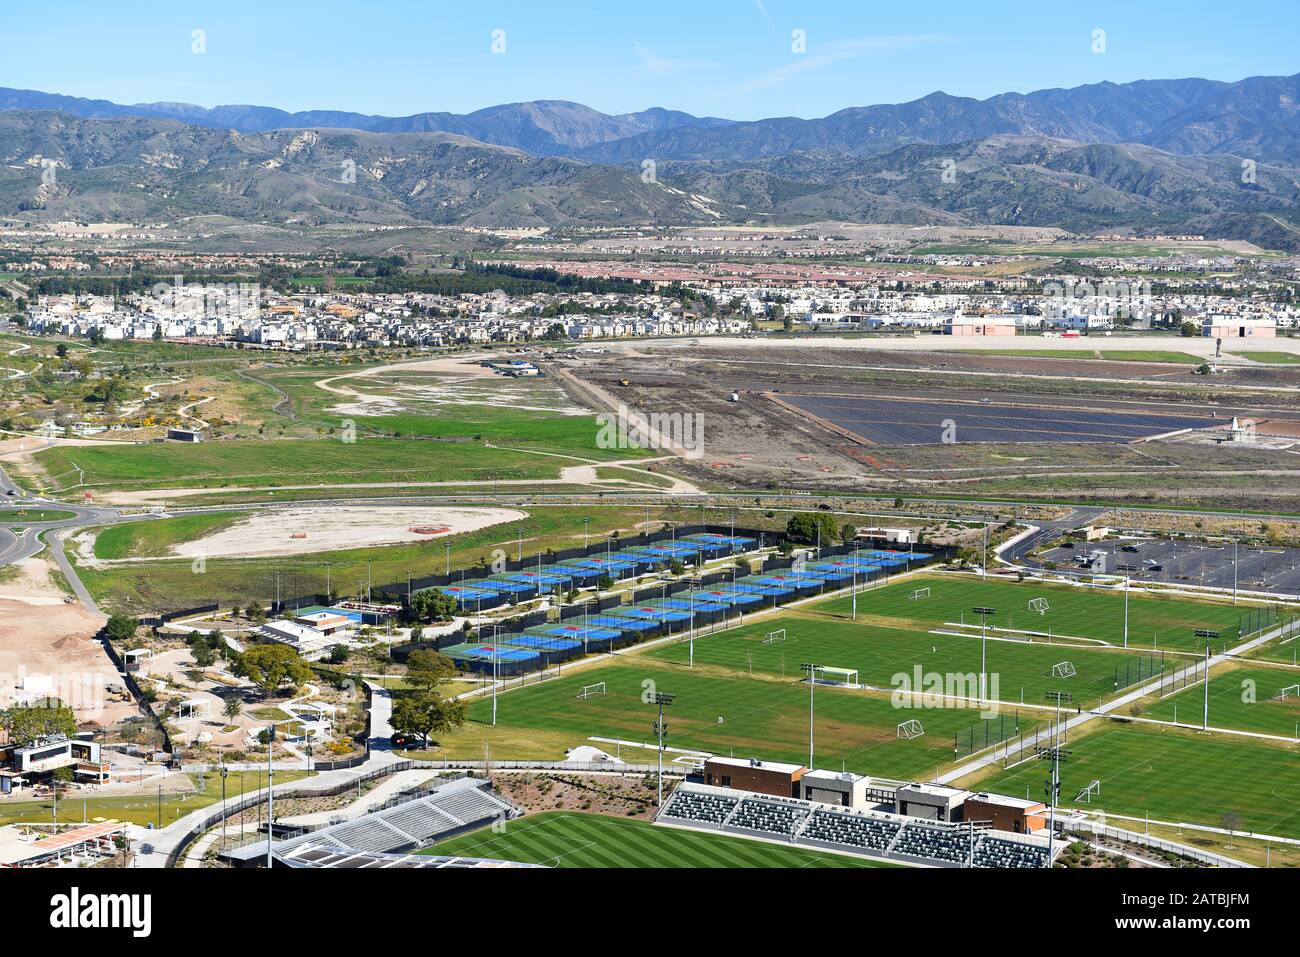 Irvine, KALIFORNIEN - 31. JANUAR 2020: Luftbild der Tennisanlage, Fußballfelder mit neuen Häusern und die santa Ana Mountains in der Ferne. Stockfoto